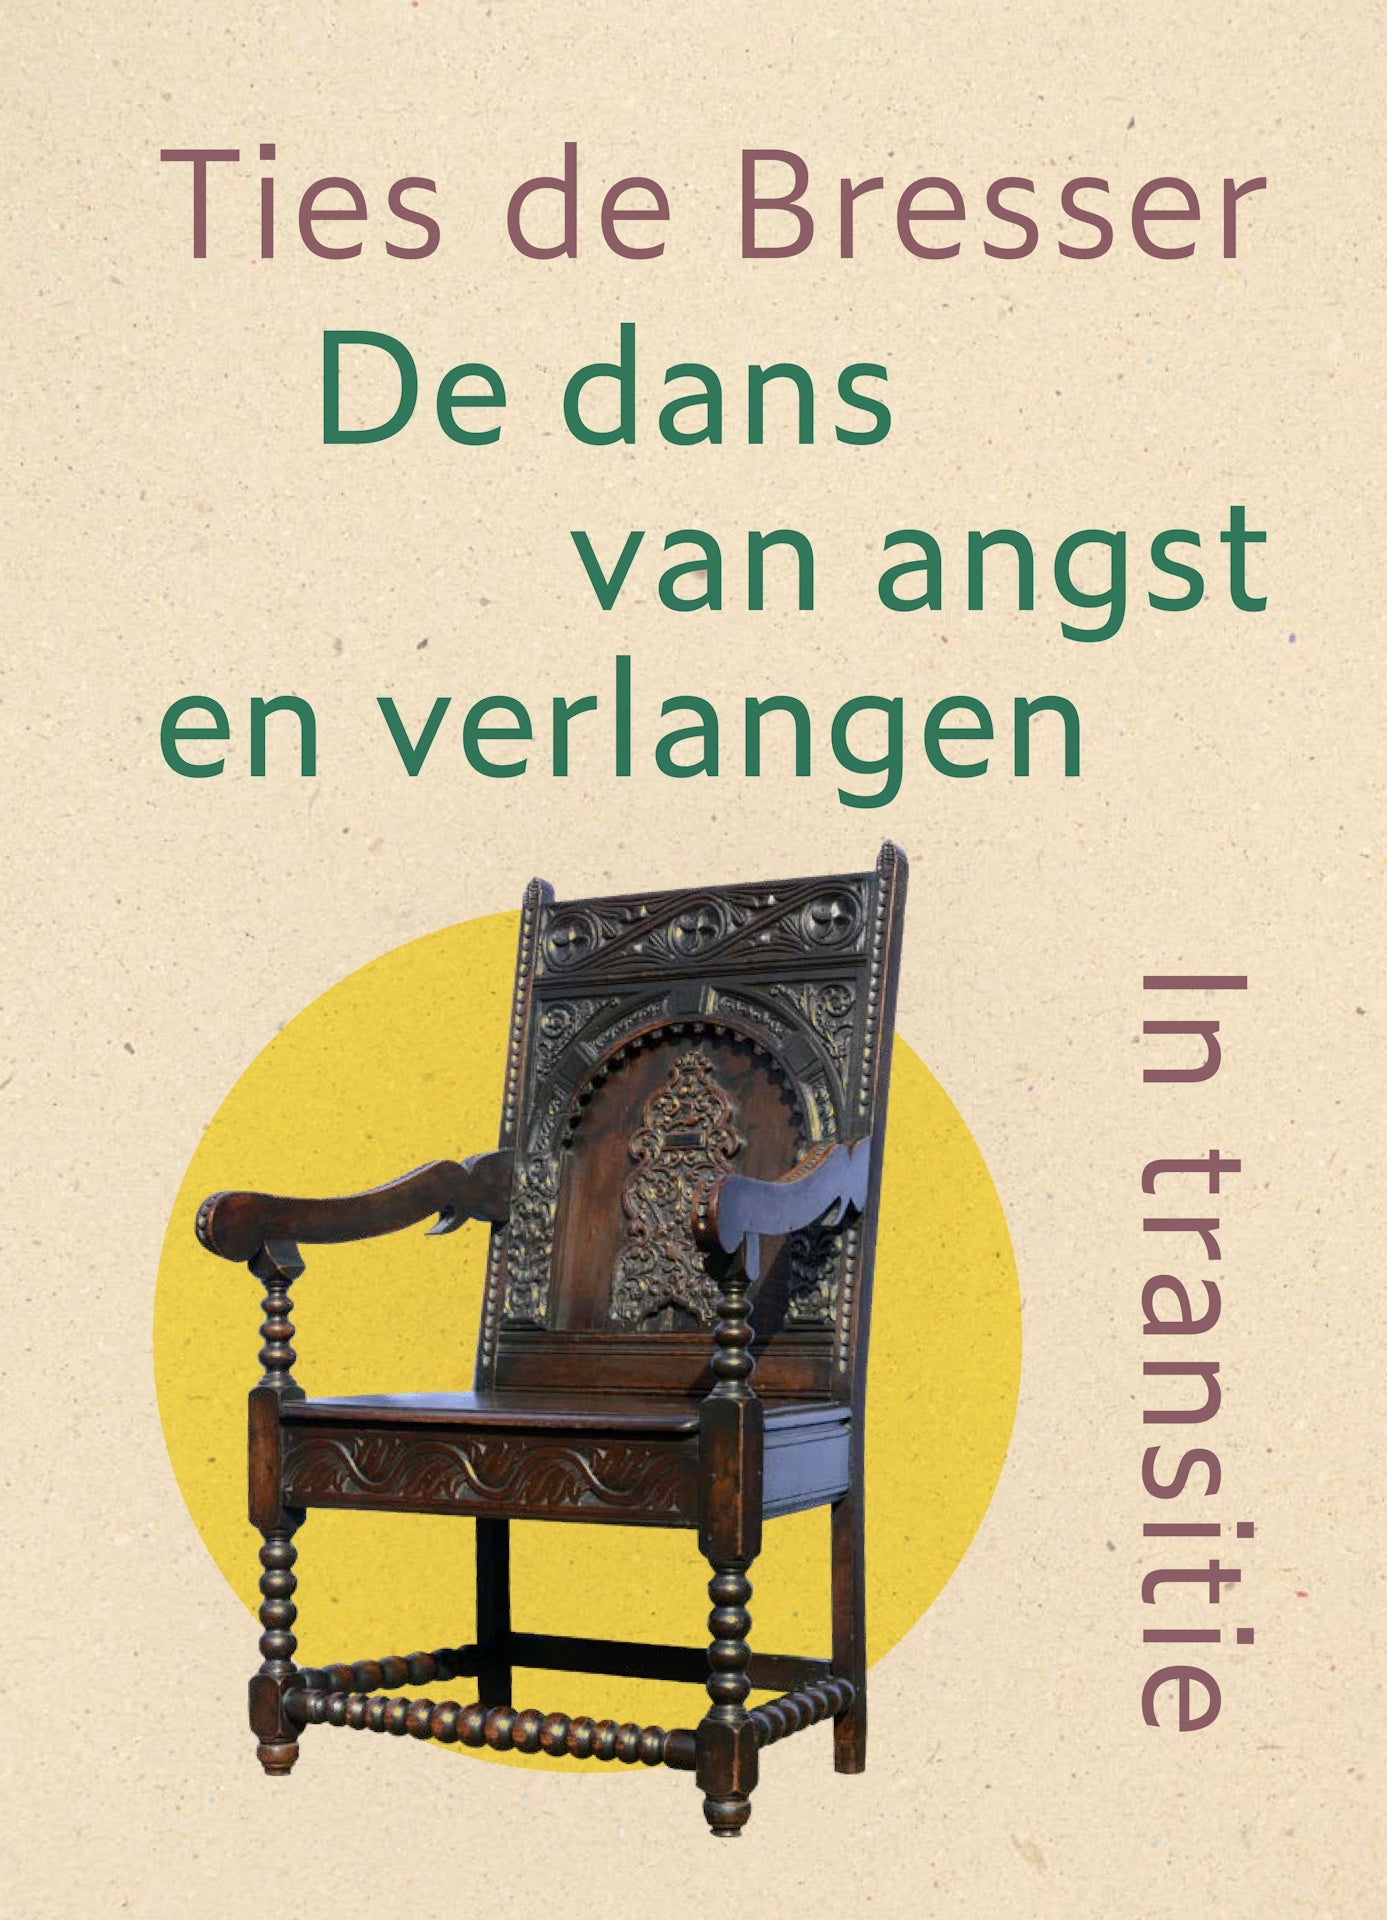 De dans van angst en verlangen - Ties de Bresser, front of the book